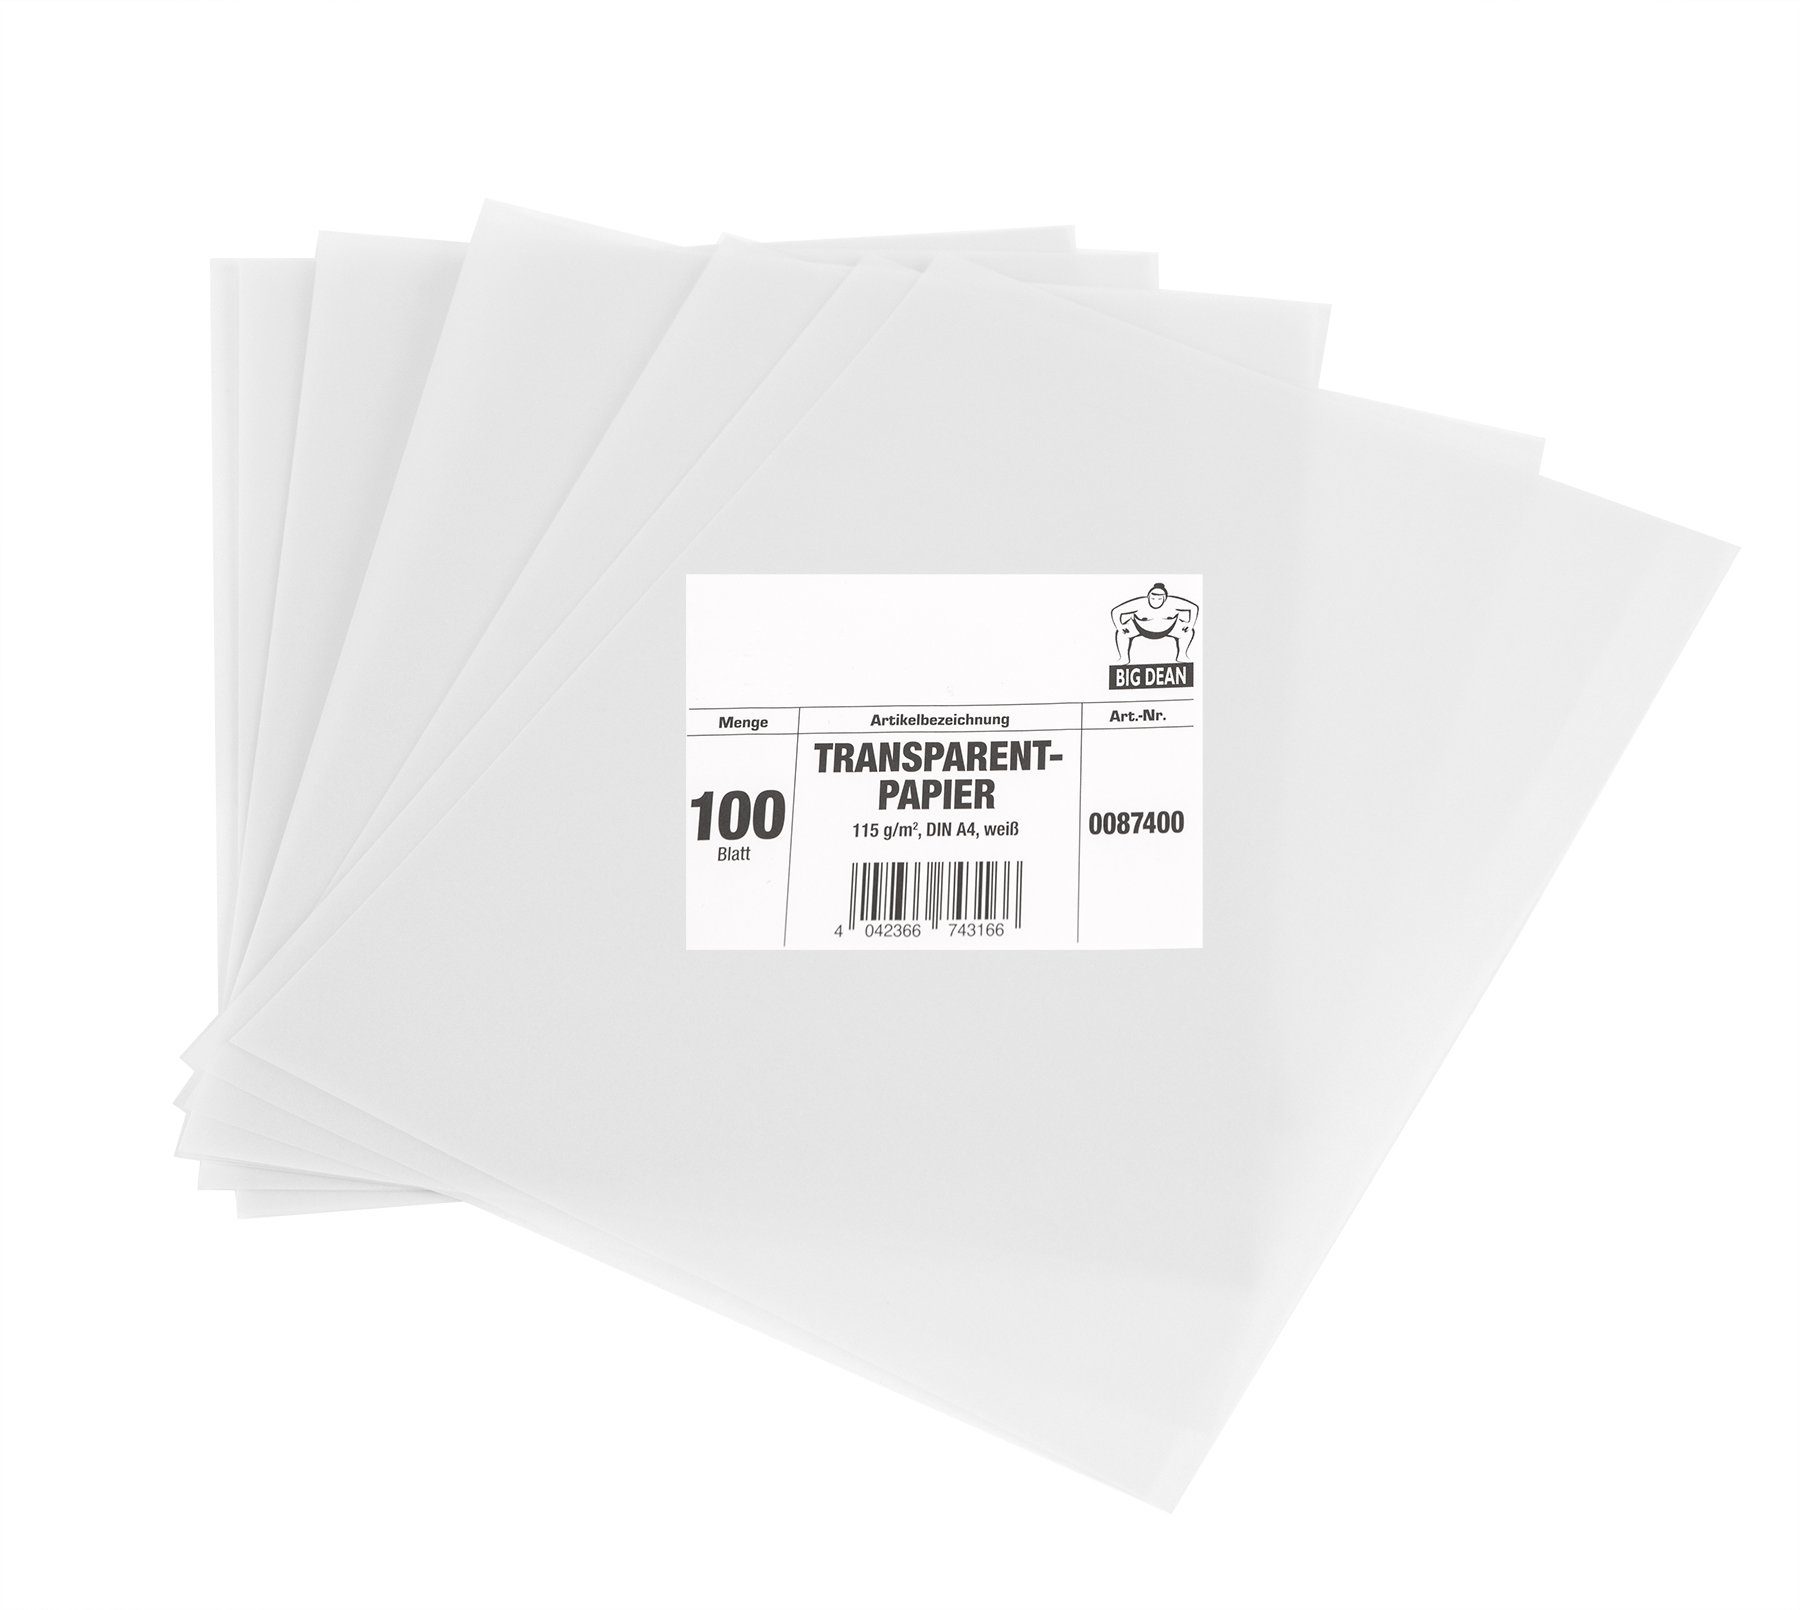 BigDean Transparentpapier 100 Blatt DIN A4 extra stark 115 g/m² weiß  transparent bedruckbar